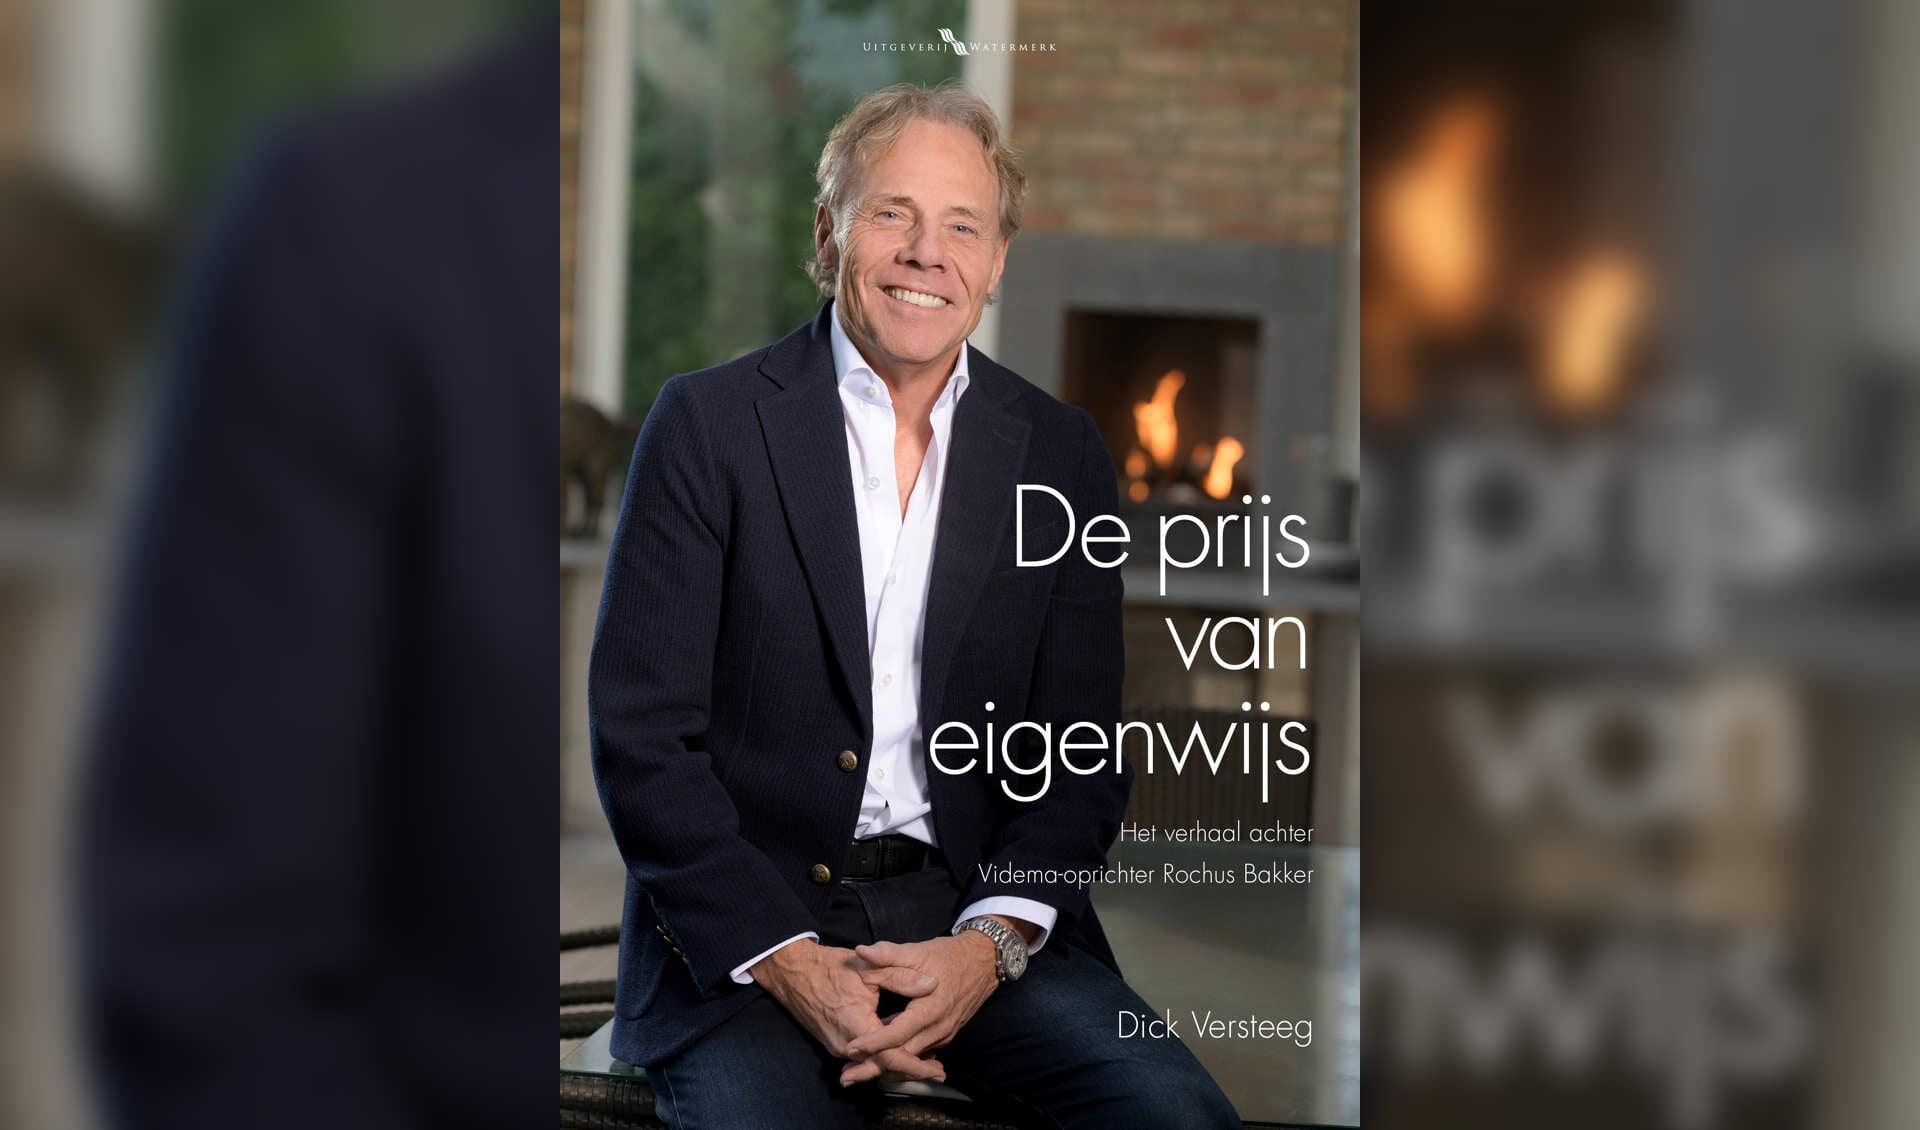 • Rochus Bakker op de cover van ‘De prijs van eigenwijs’.